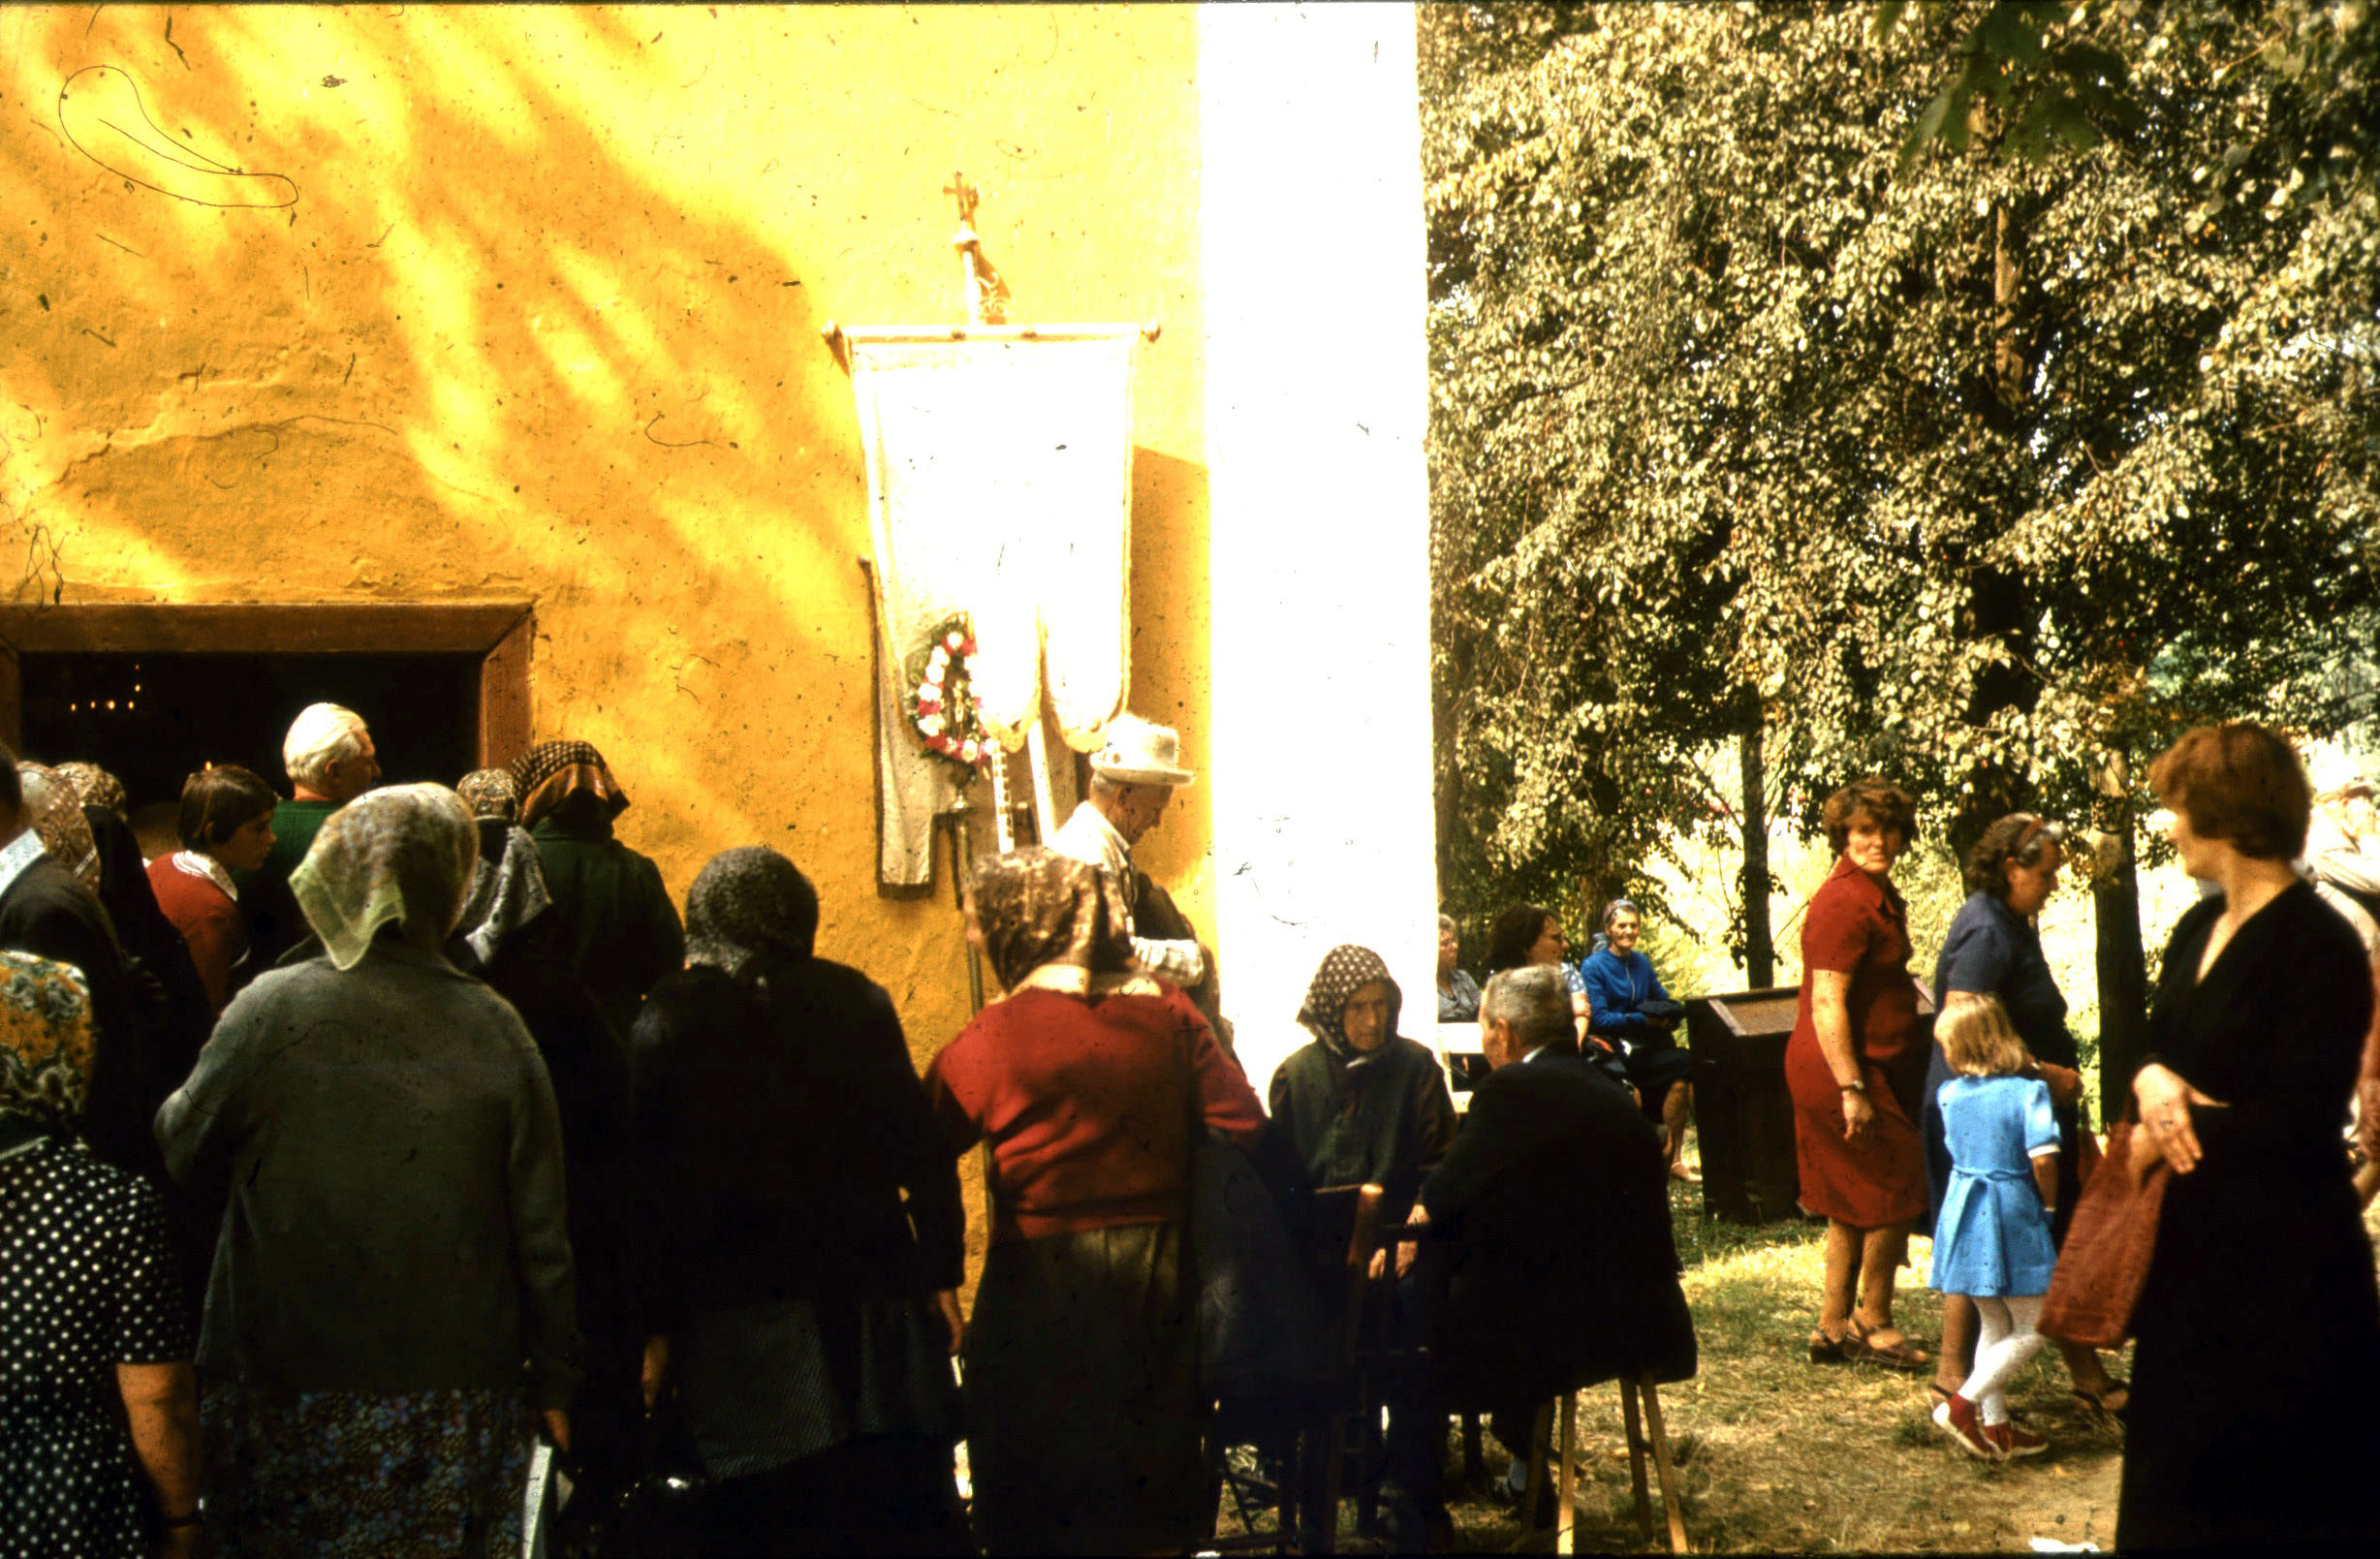 Gyülekezés a kegykápolna bejárata előtt (Rippl-Rónai Múzeum RR-F)